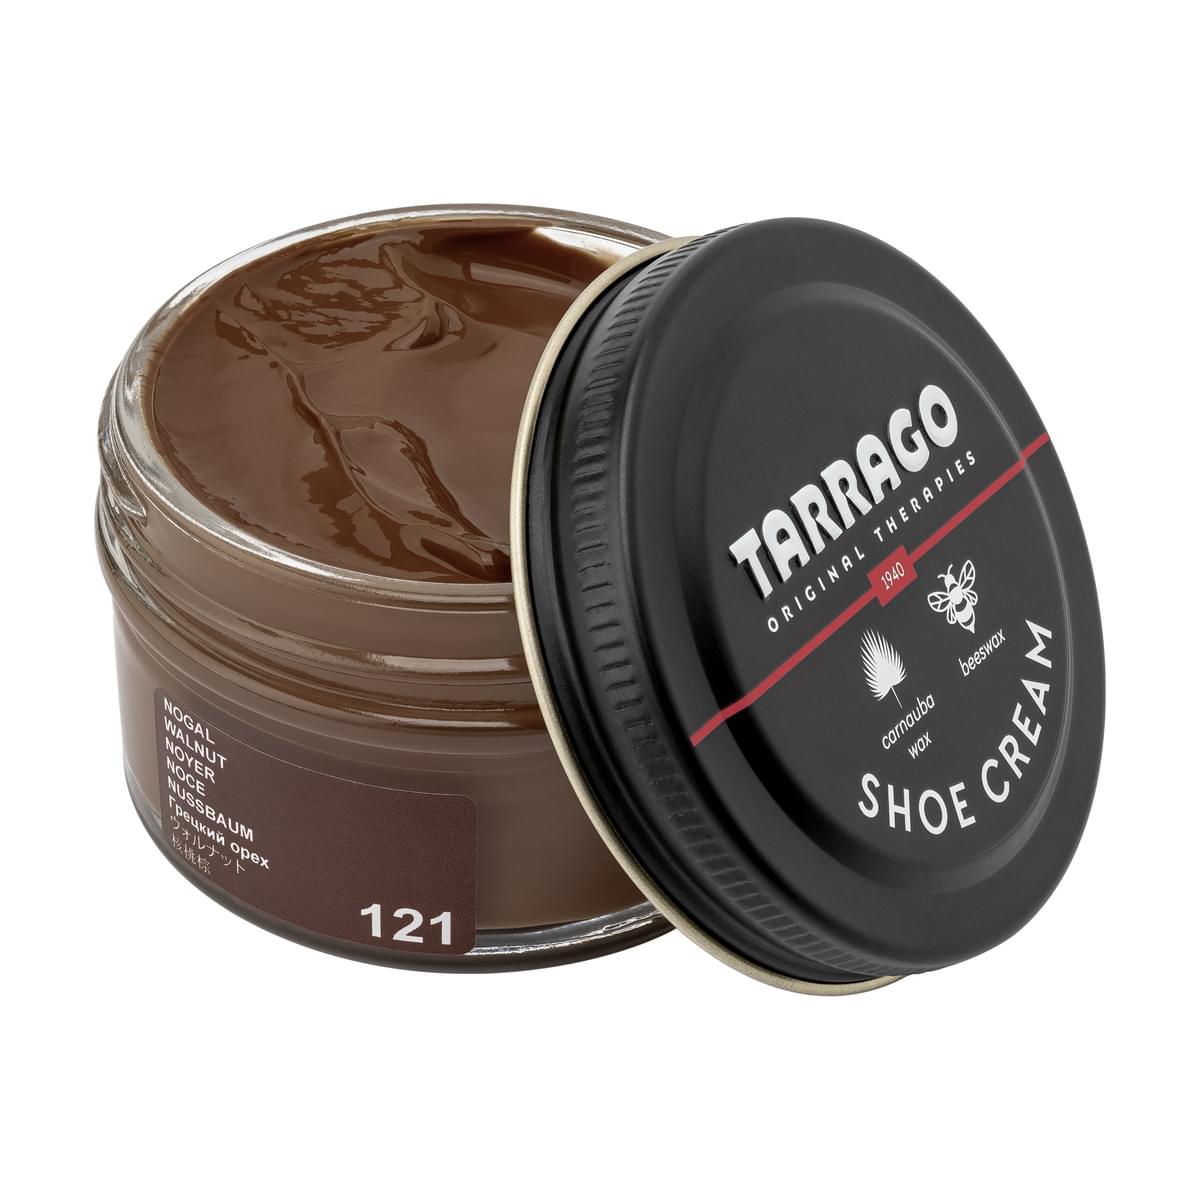 Tarrago Shoe Cream  - Walnut - 121